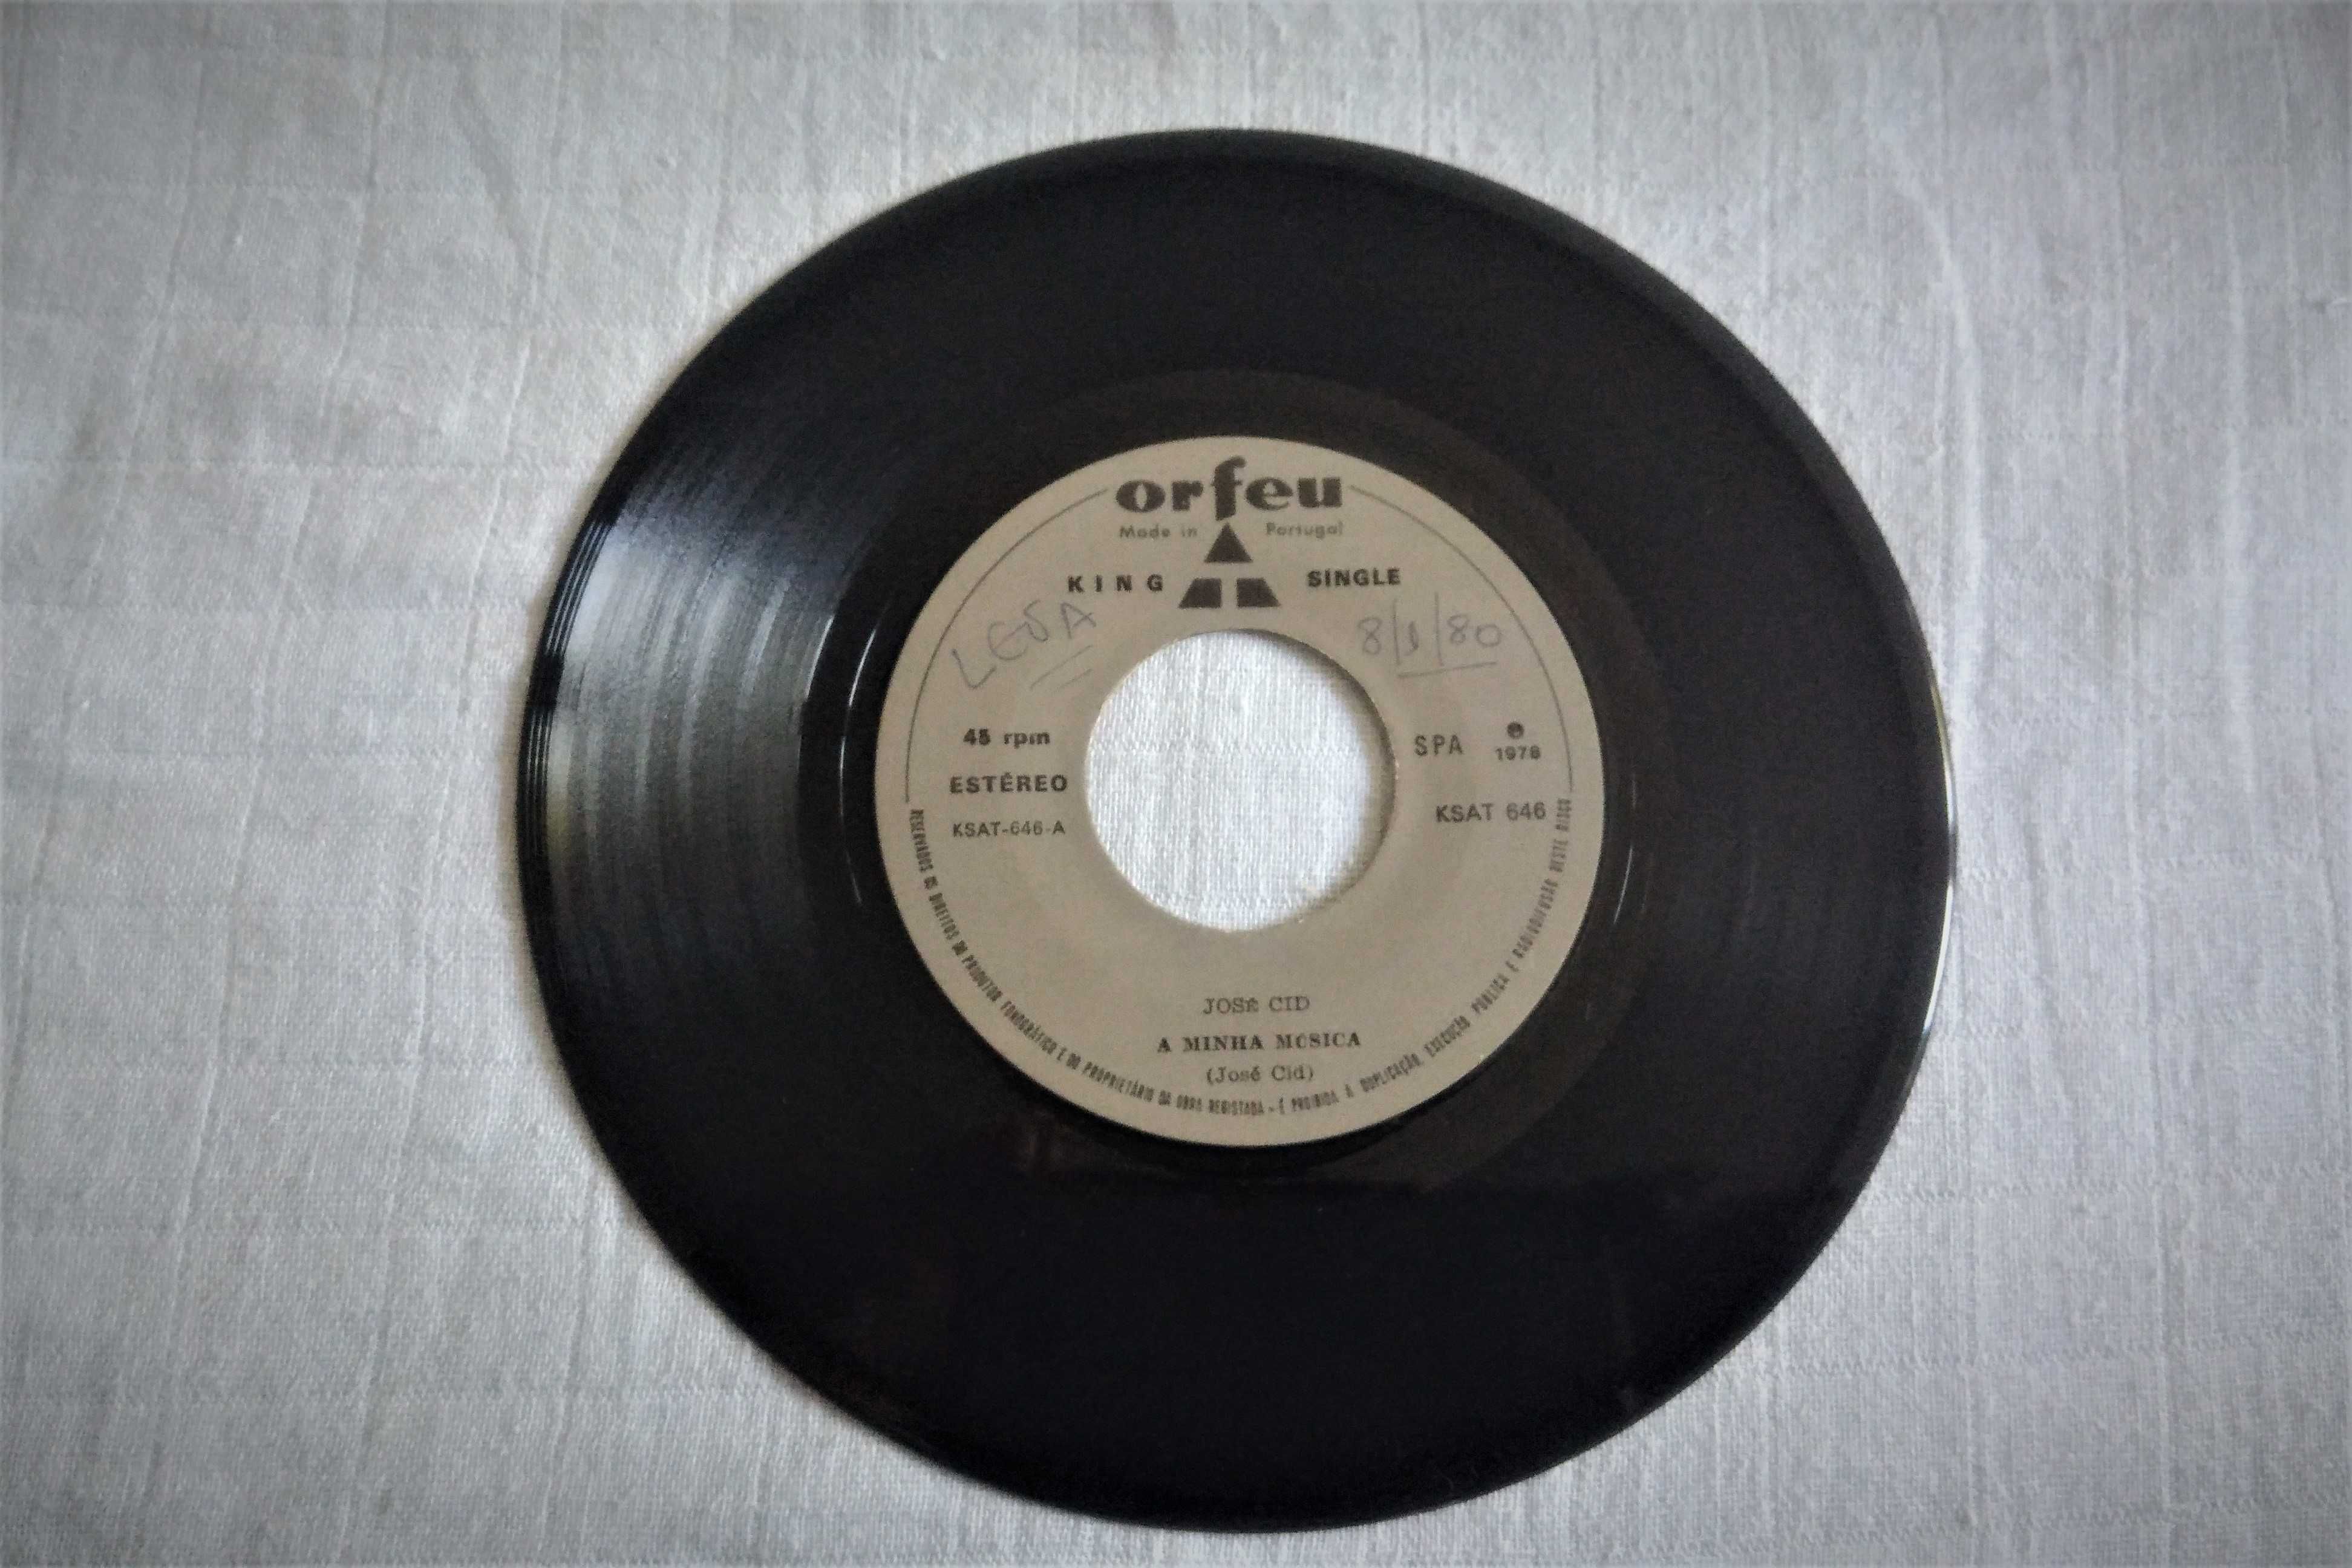 Disco vinil single A minha música, José Cid, 1978